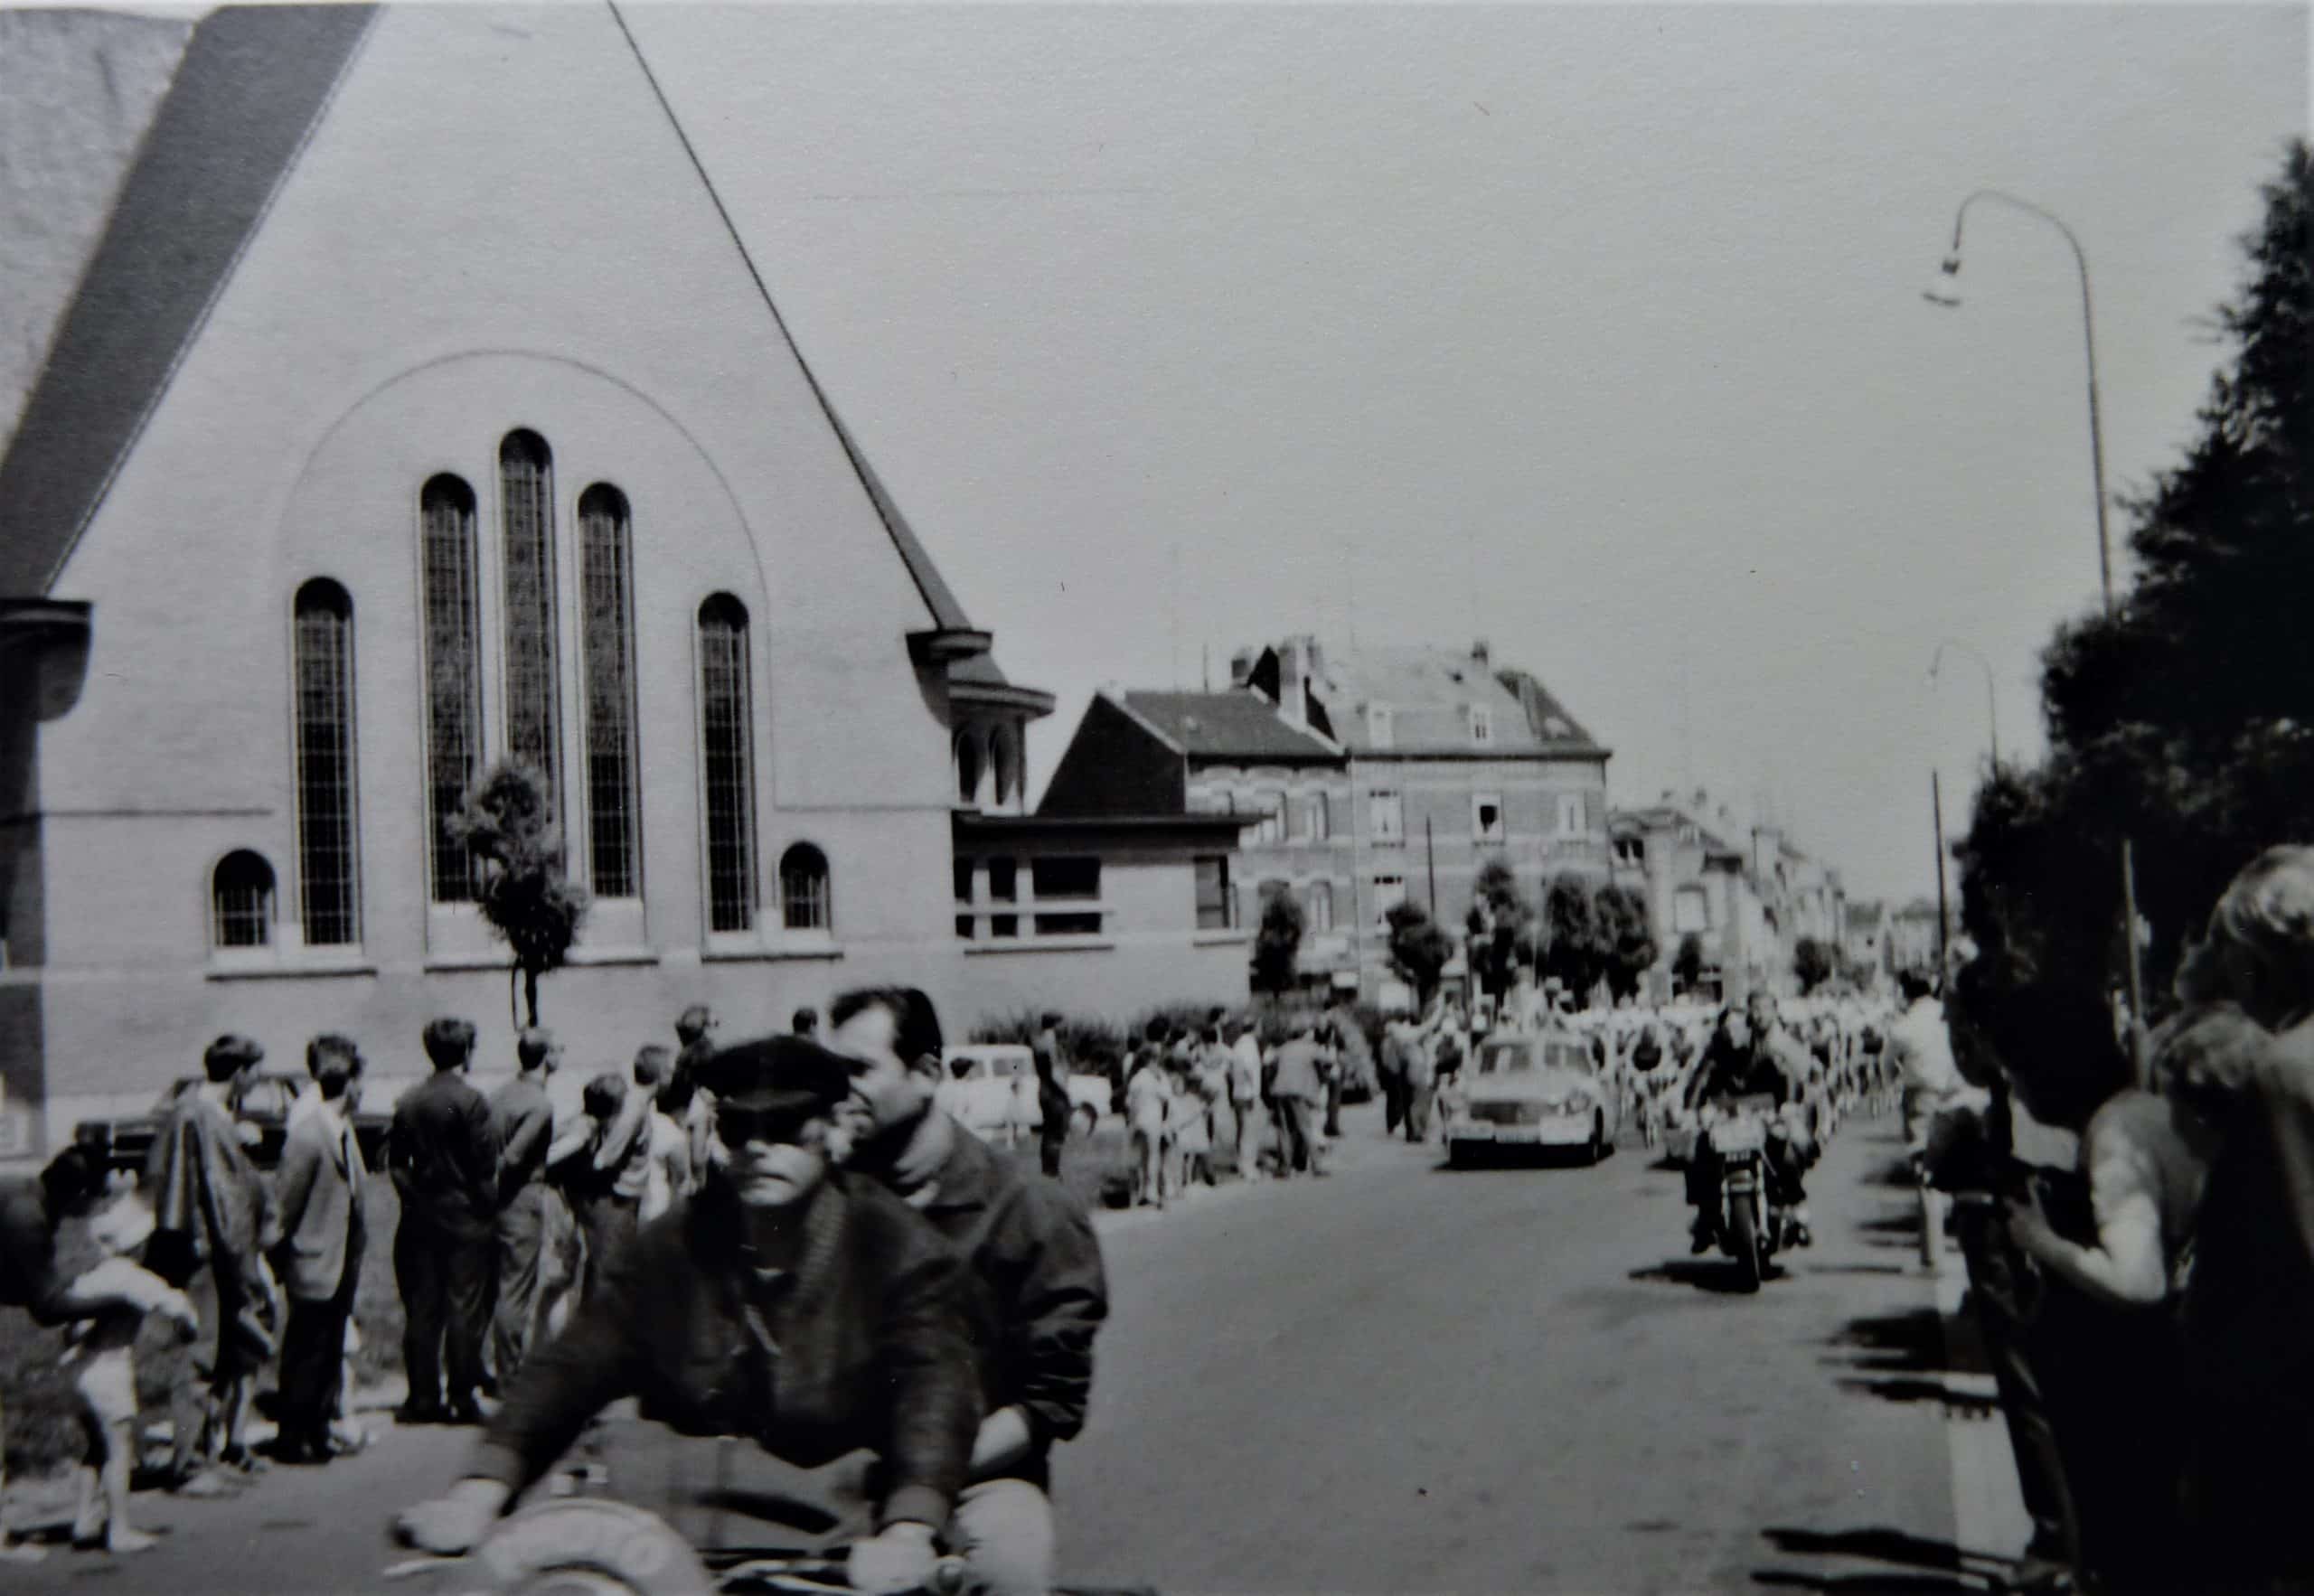 O Tour de France passa pelo Anderlecht em 1968. Foto cortesia de Christian Polfliet, colorida e aprimorada pelo MyHeritage